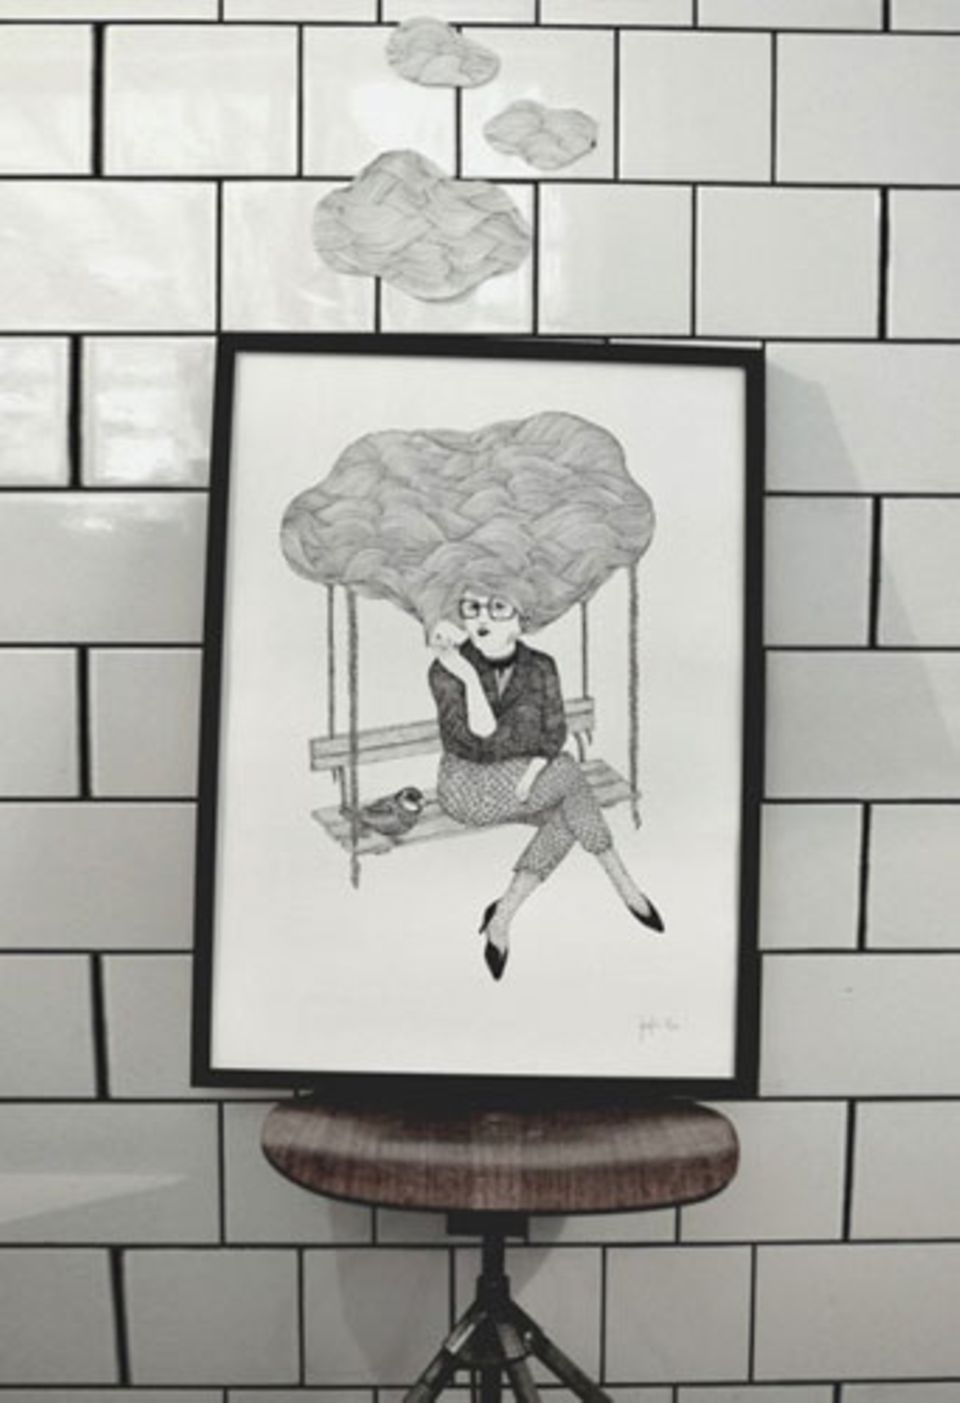 Viele der Poster im Shop von Wonderwall sind Drucke von Zeichnungen oder Illustrationen skandinavischer Illustratoren. So auch "Smokey Mind" von Jennie Ekström, circa 93 Euro.